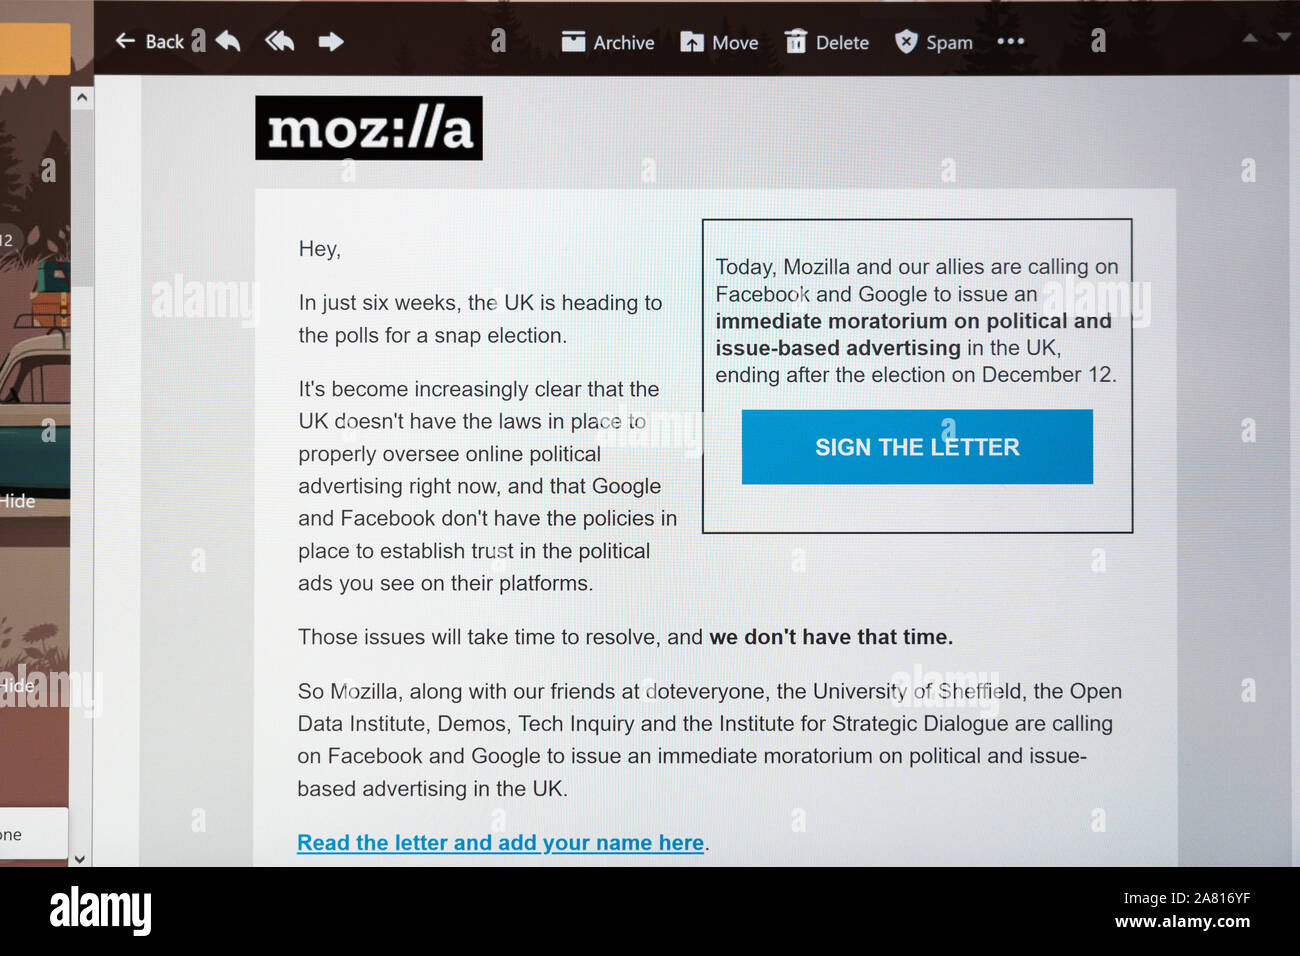 Una solicitud por correo electrónico a firmar una carta abierta de Mozilla le preguntamos a Google y Facebook para una prohibición de anuncios políticos antes de la ELECCIÓN GENERAL DEL REINO UNIDO Foto de stock